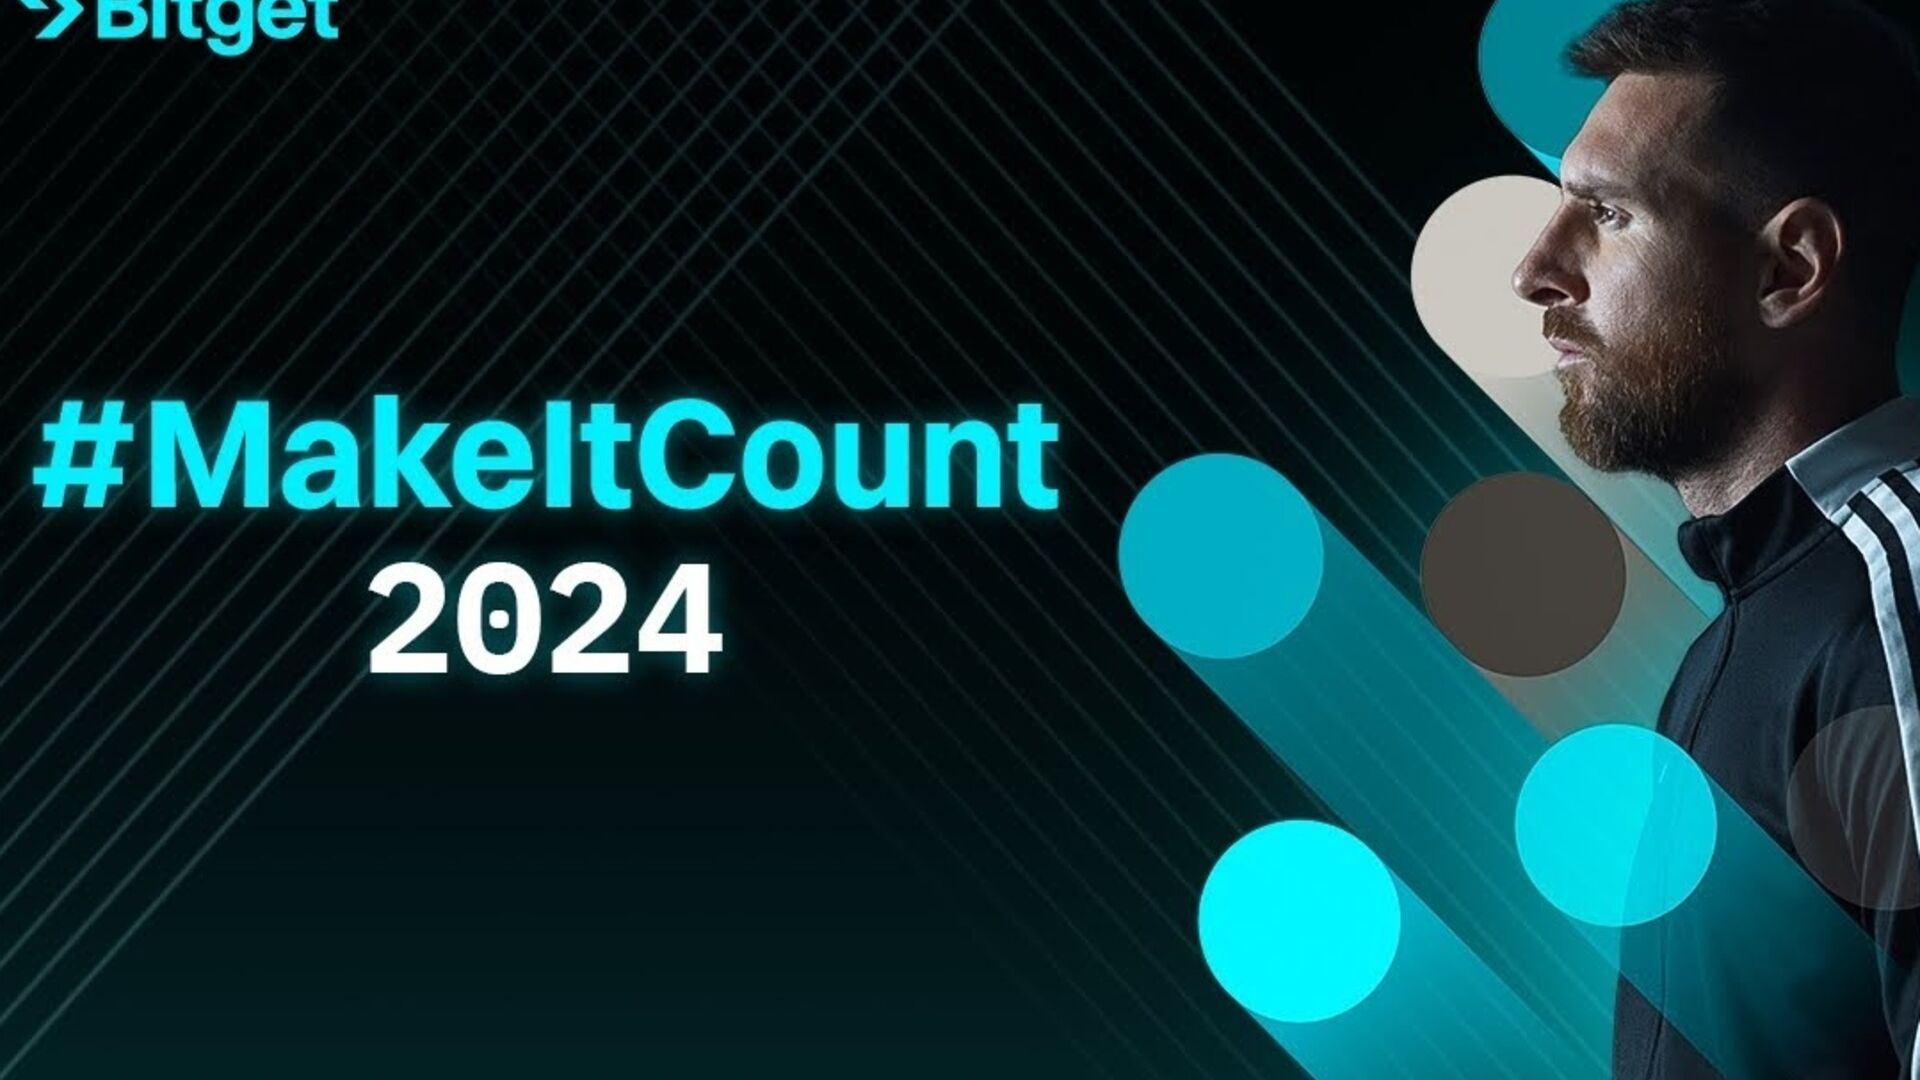 리오넬 메시: 영화 #MakeItCount 2024는 암호화폐 거래소 Bitget과 아르헨티나 축구선수가 공유하는 근본적인 가치를 상징합니다.